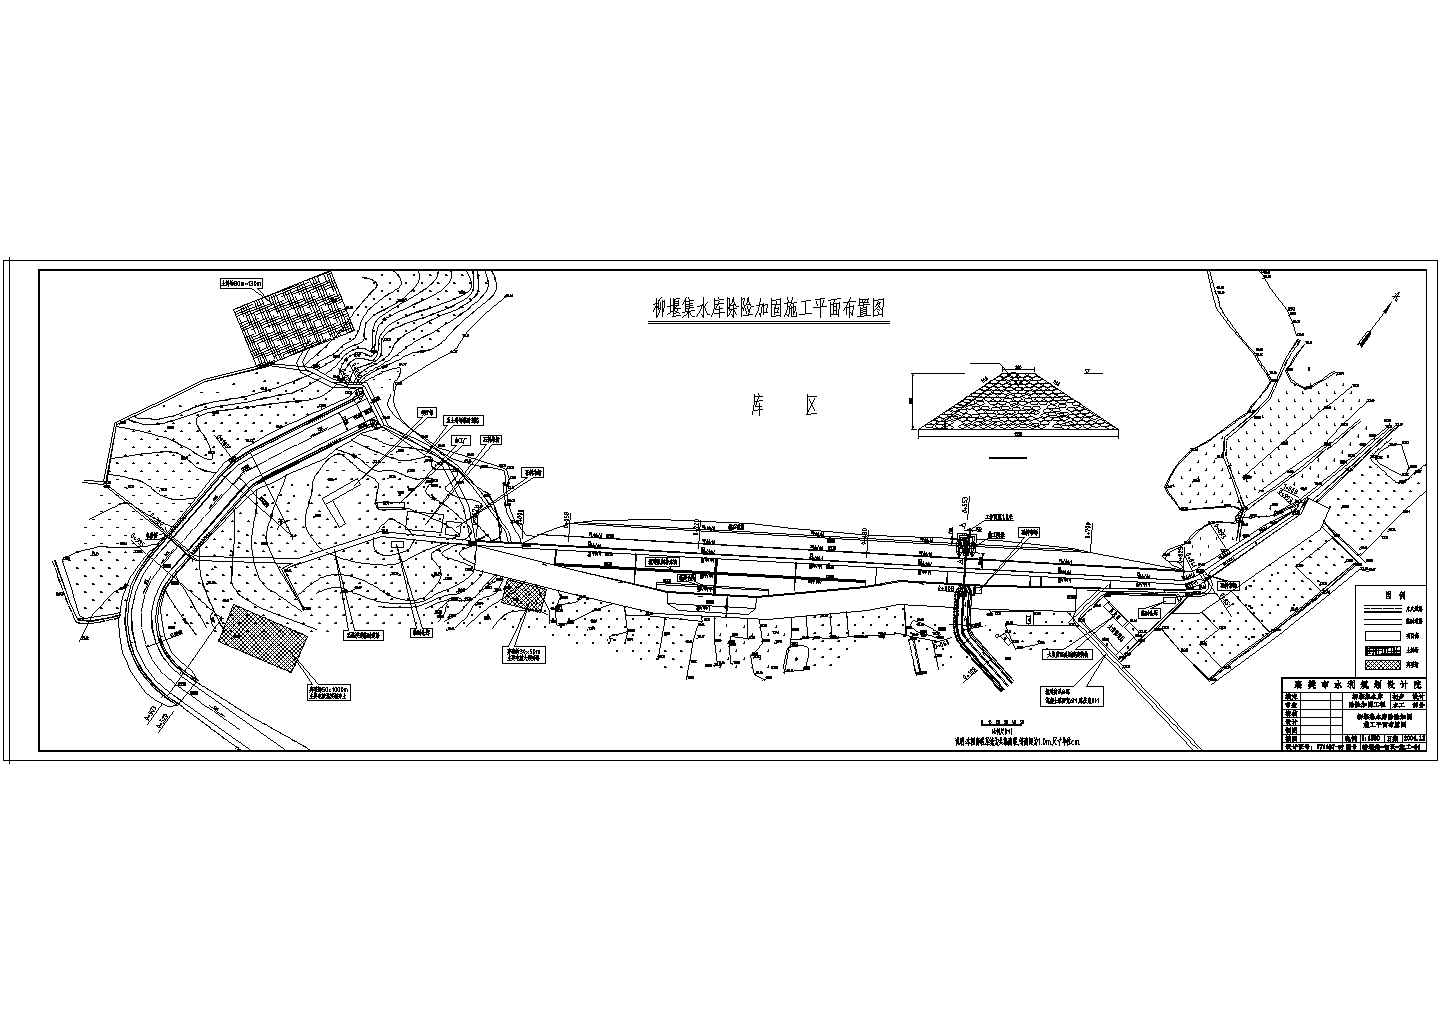 襄樊市某中型水库脱险加固工程设计施工图